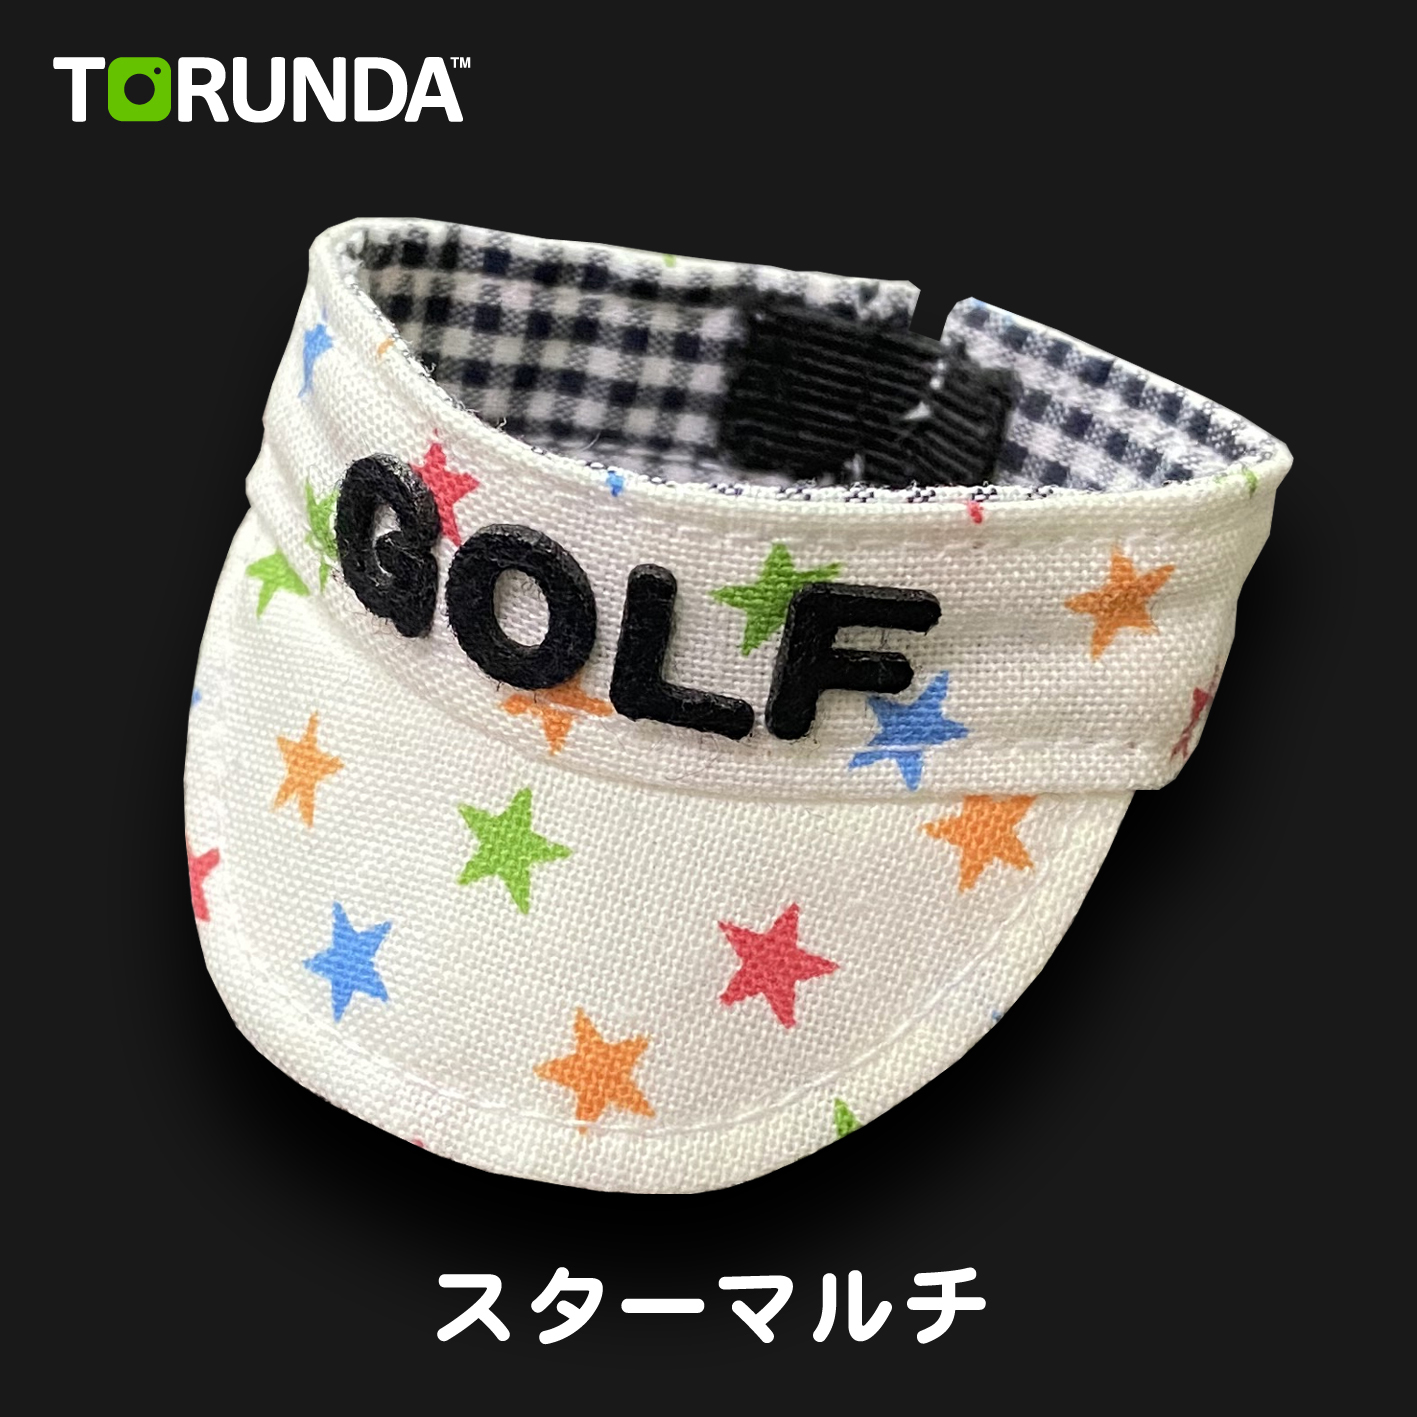 TORUNDA 撮るんだ かわいい 可愛い ゴルフボール用 サンバイザー スターマルチ